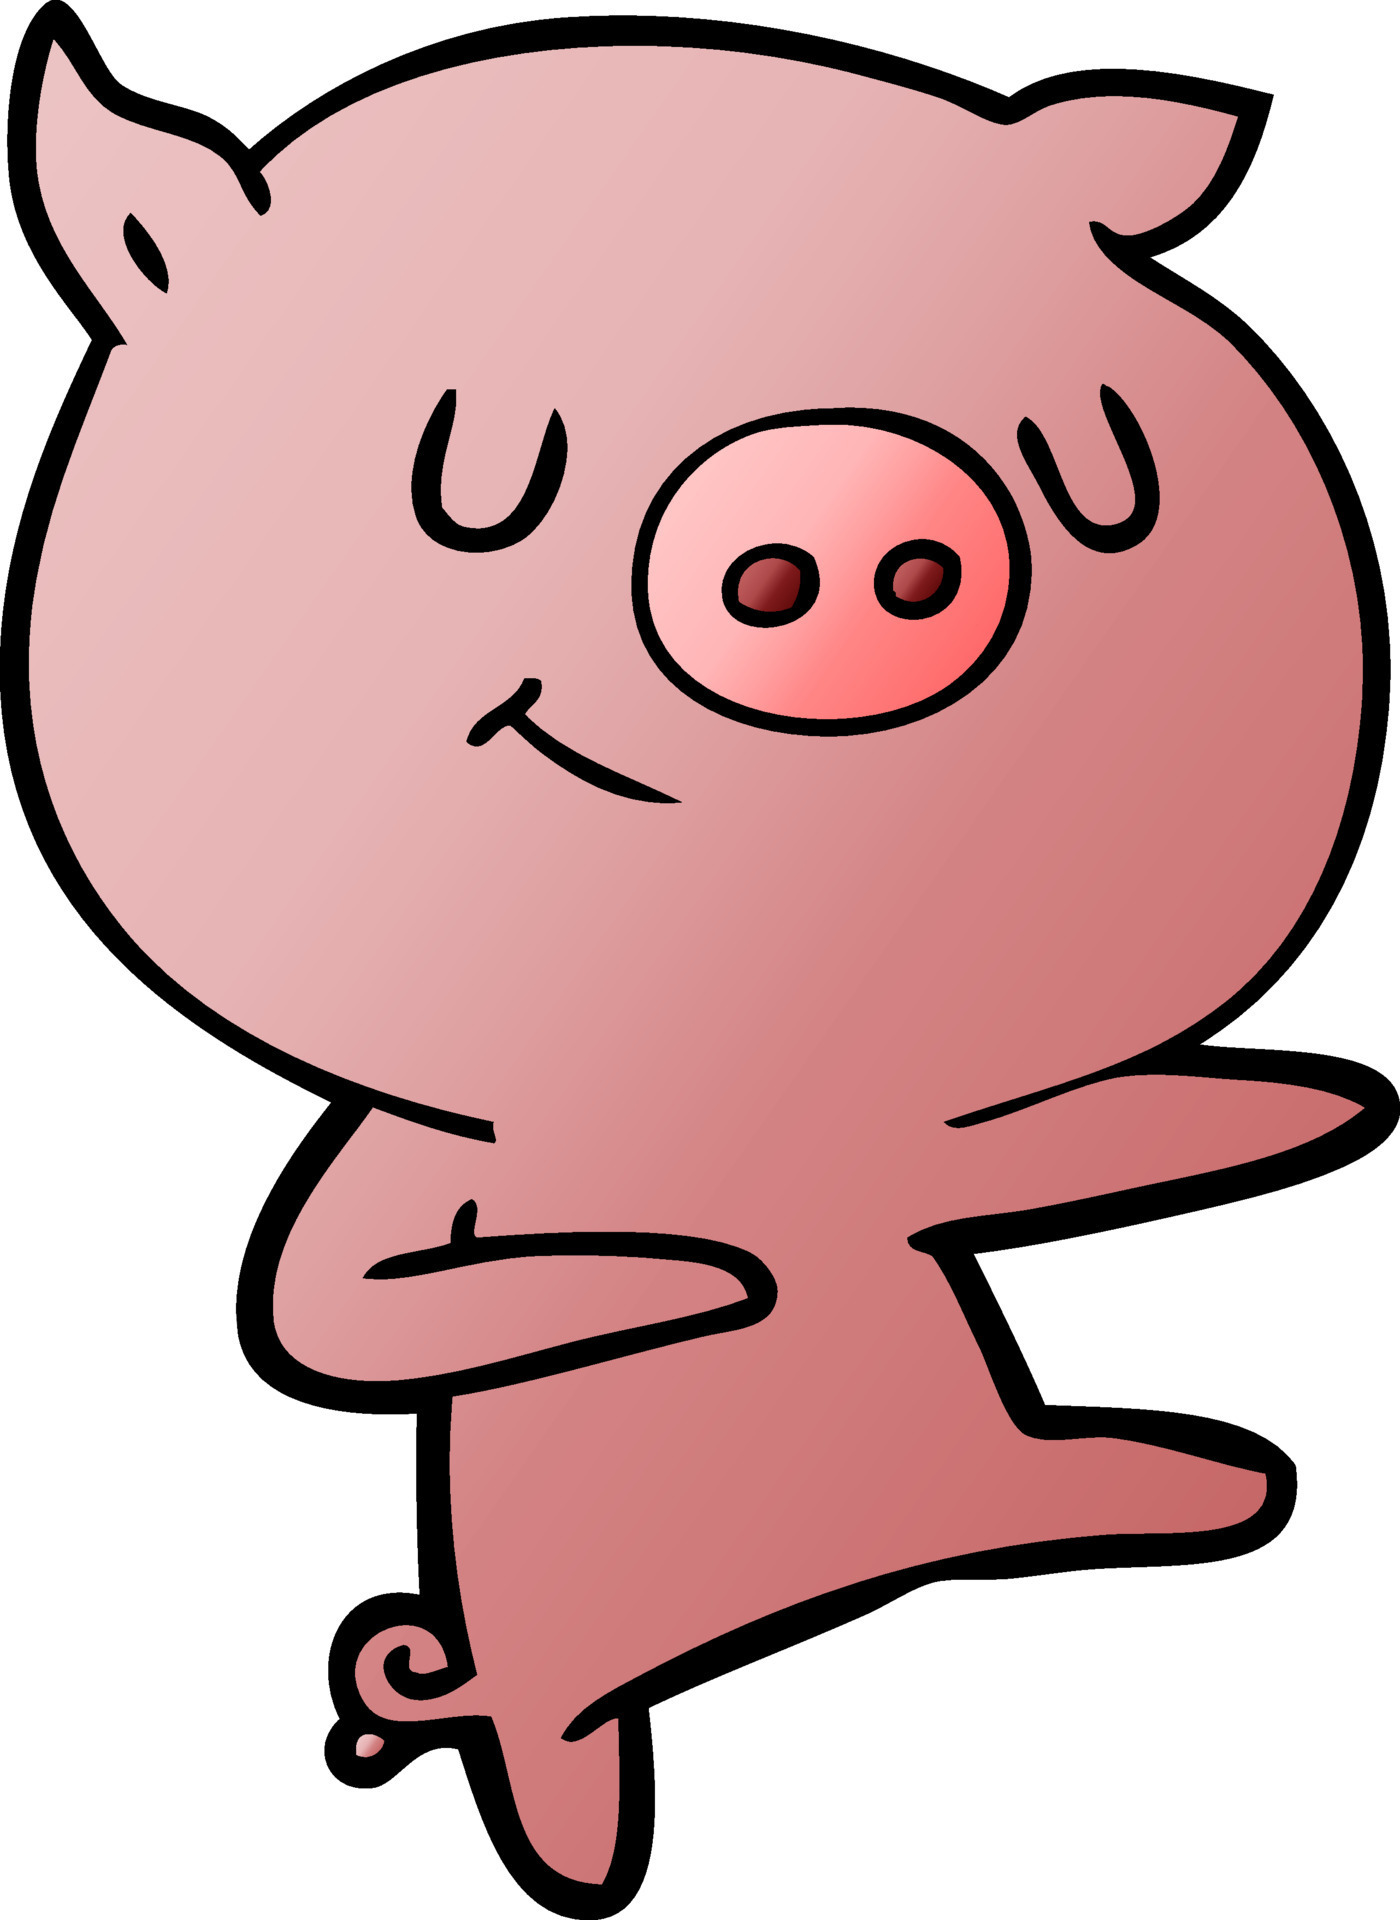 happy cartoon pig dancing 12448541 Vector Art at Vecteezy